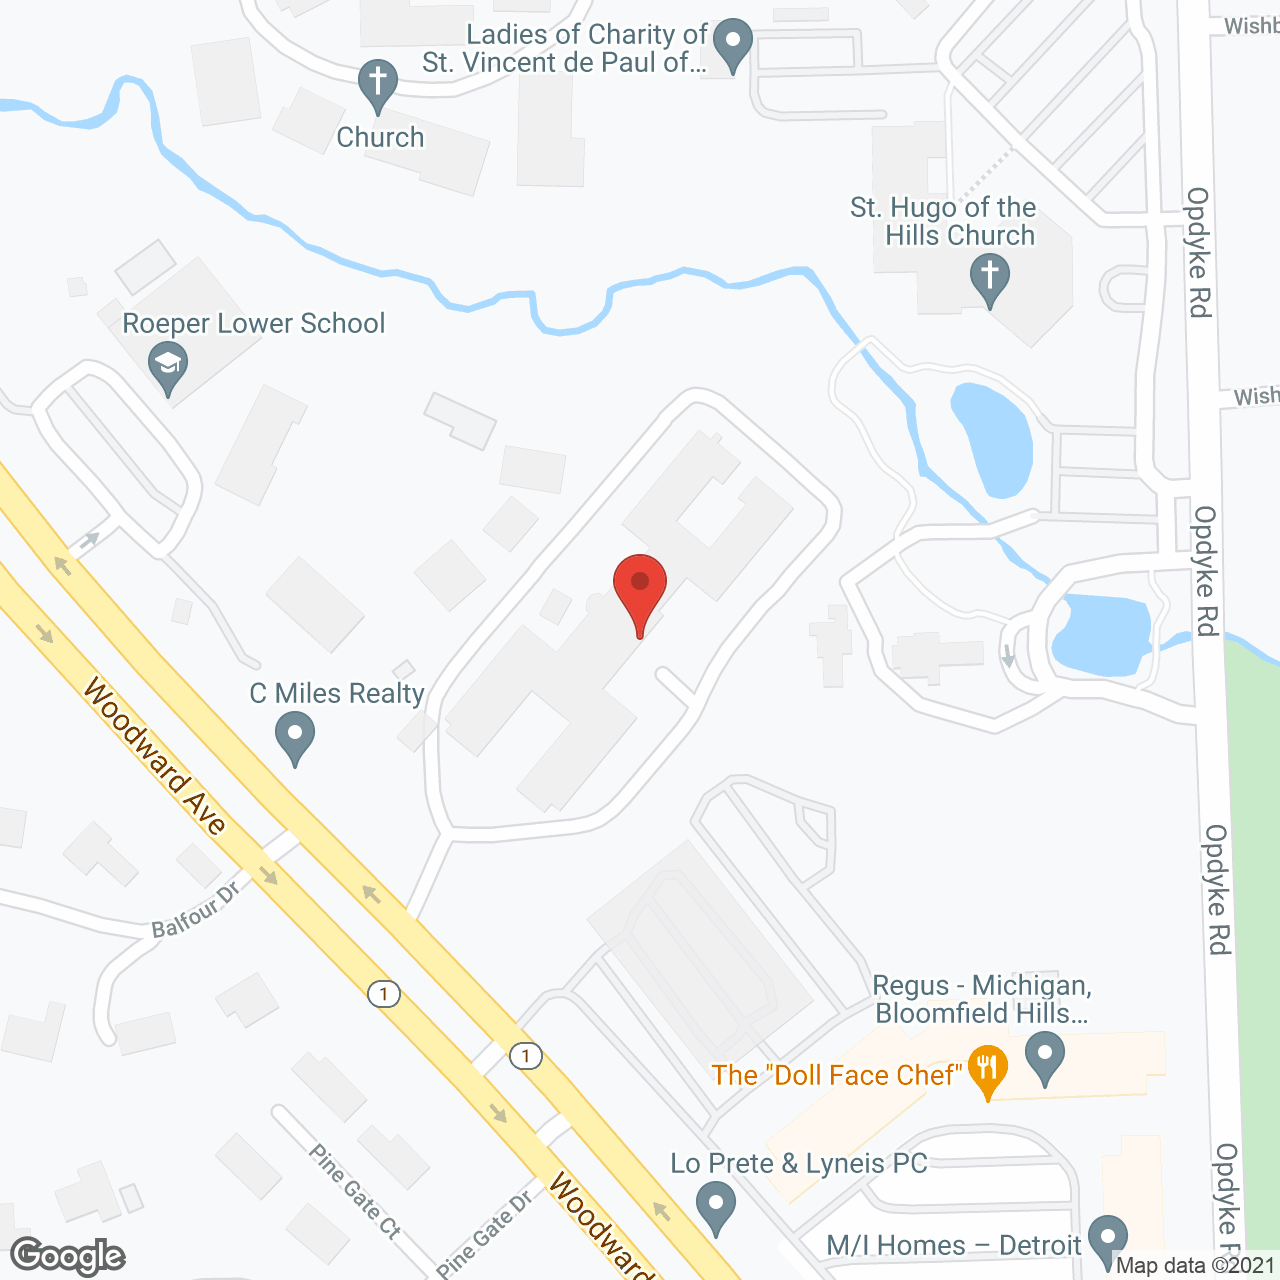 Cedarbrook in google map